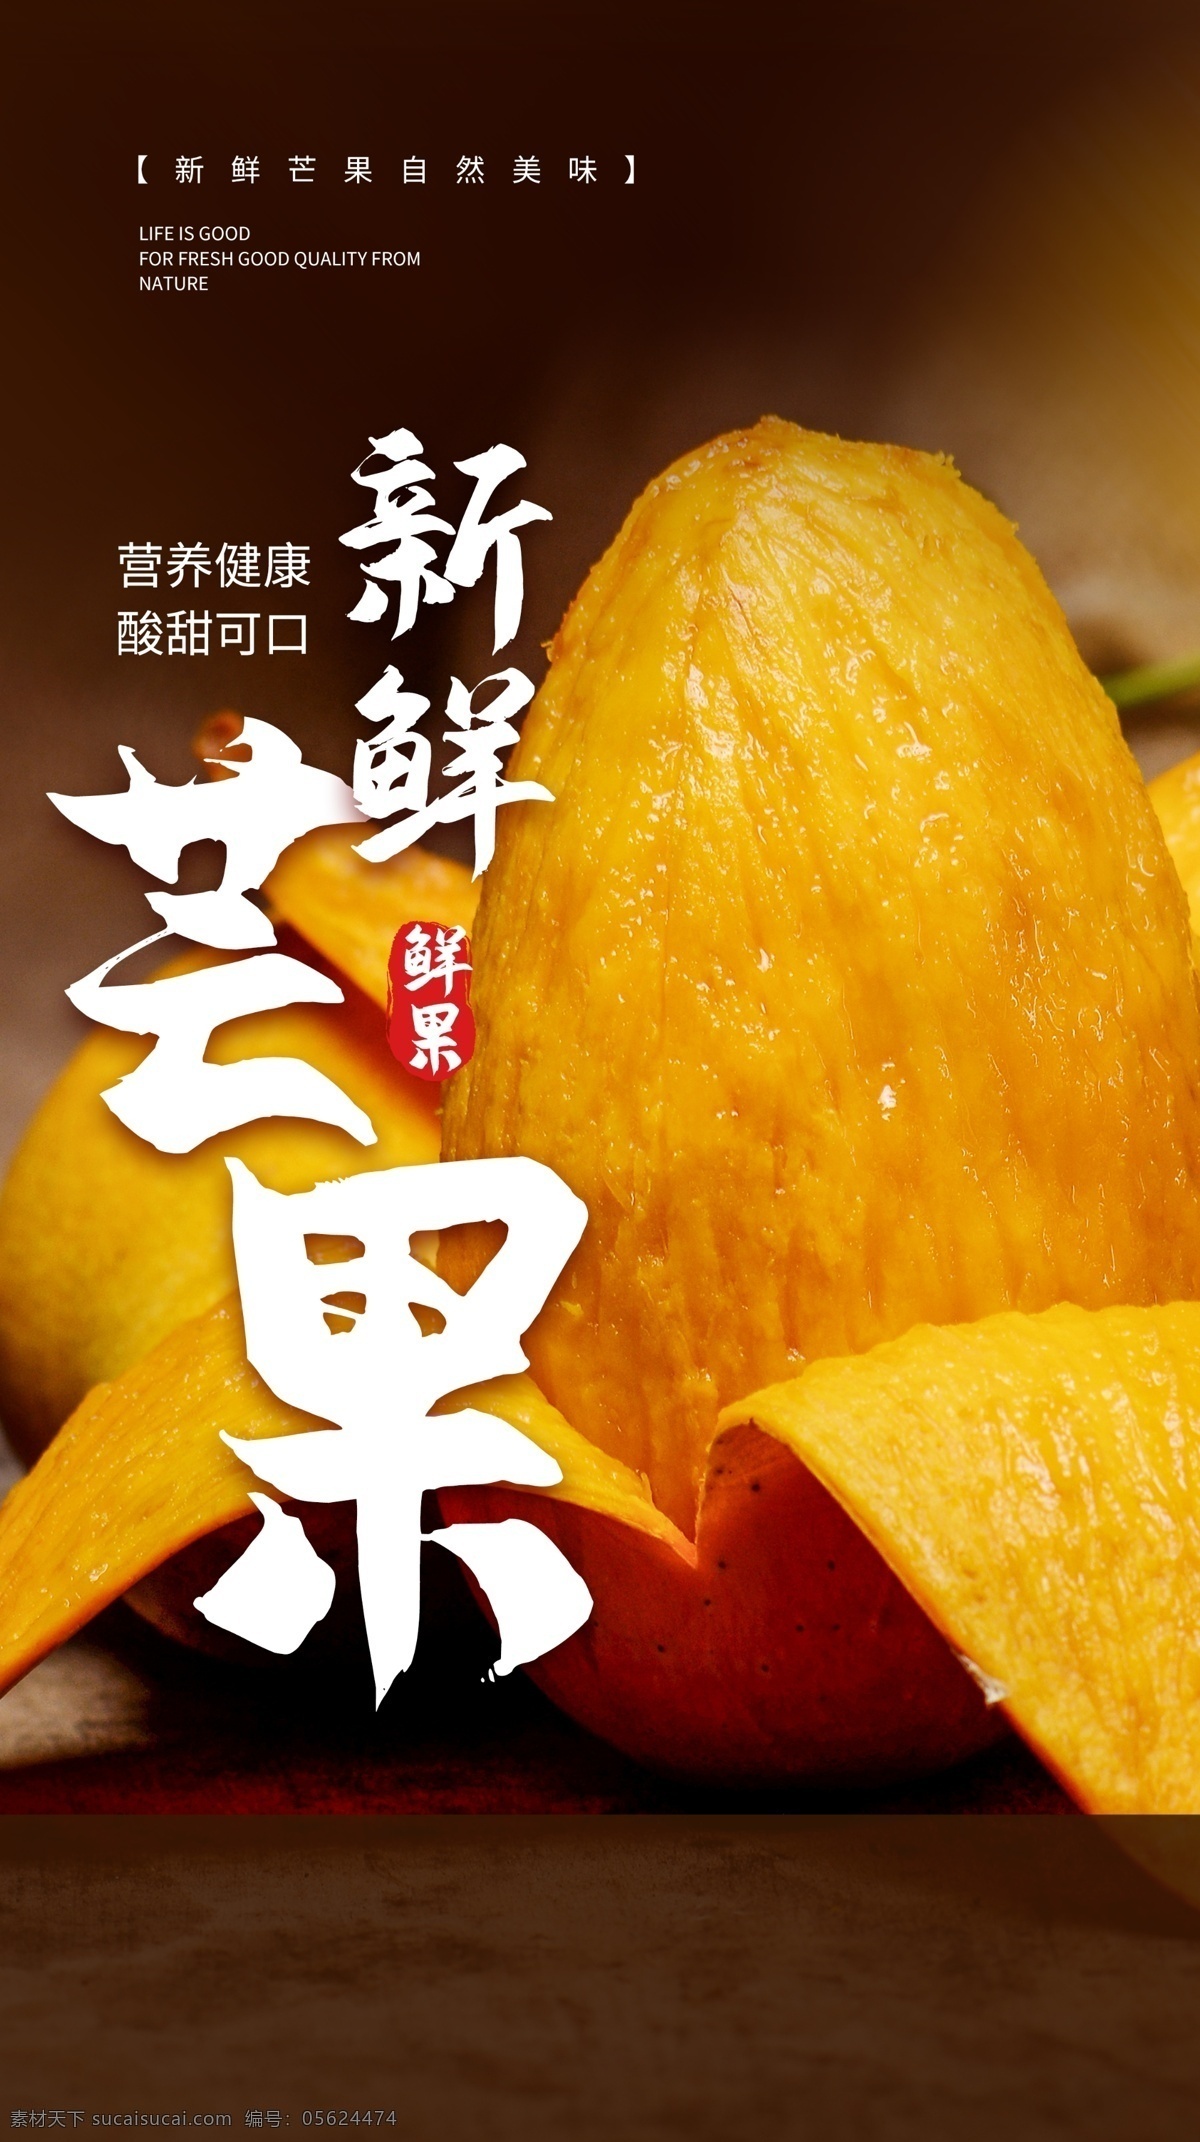 芒果 水果 活动 海报 素材图片 餐饮美食 类